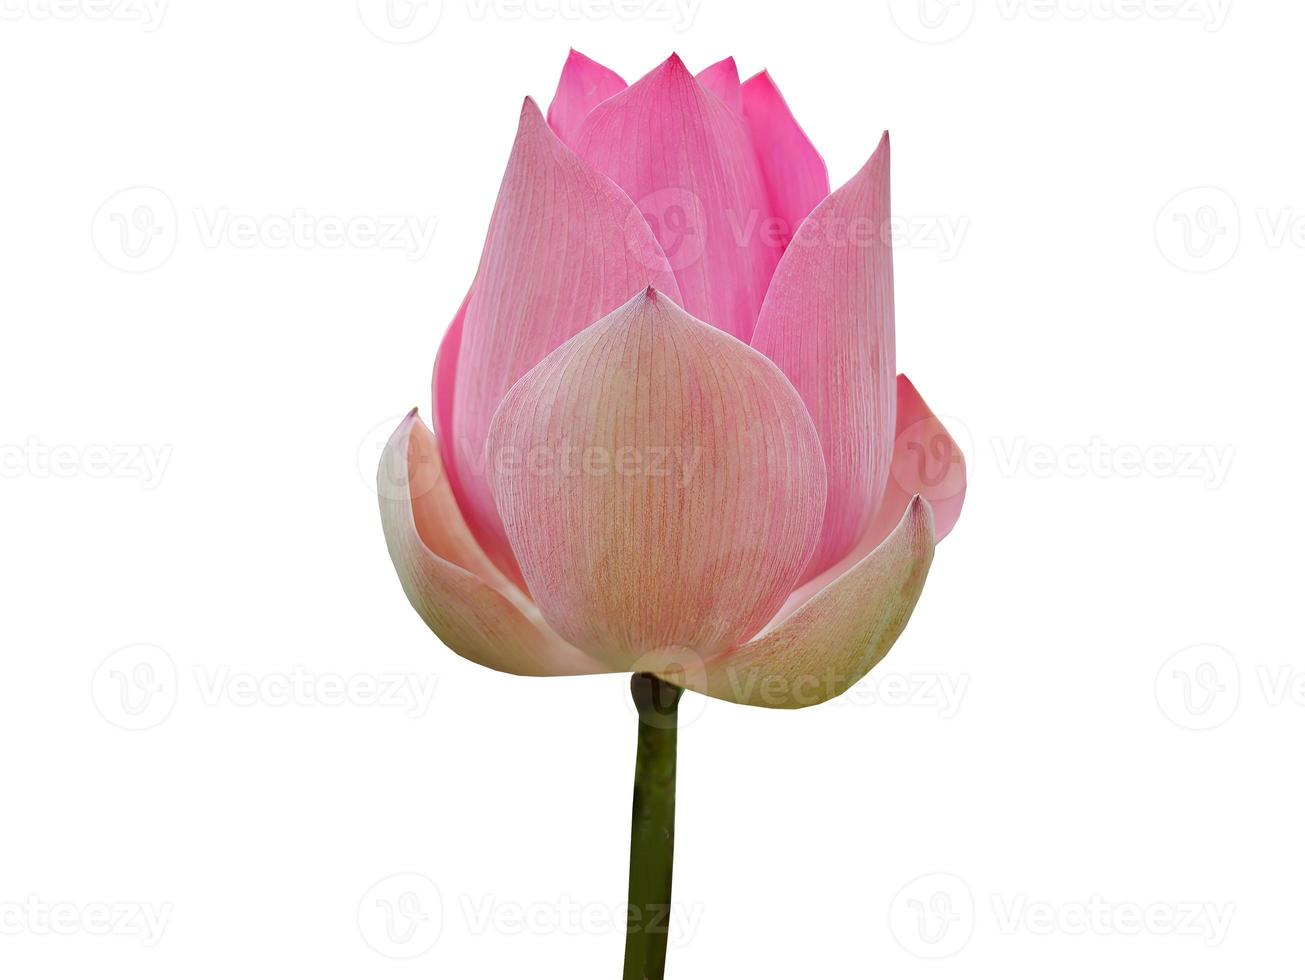 geïsoleerd, uitknippen van groot knop van enkel, roze lotus, water lelie, pastel zoet kleur, wit achtergrond, meditatie, vredevol, kom tot rust, zen, element, lotus bloem voorwerp met knipsel pad foto